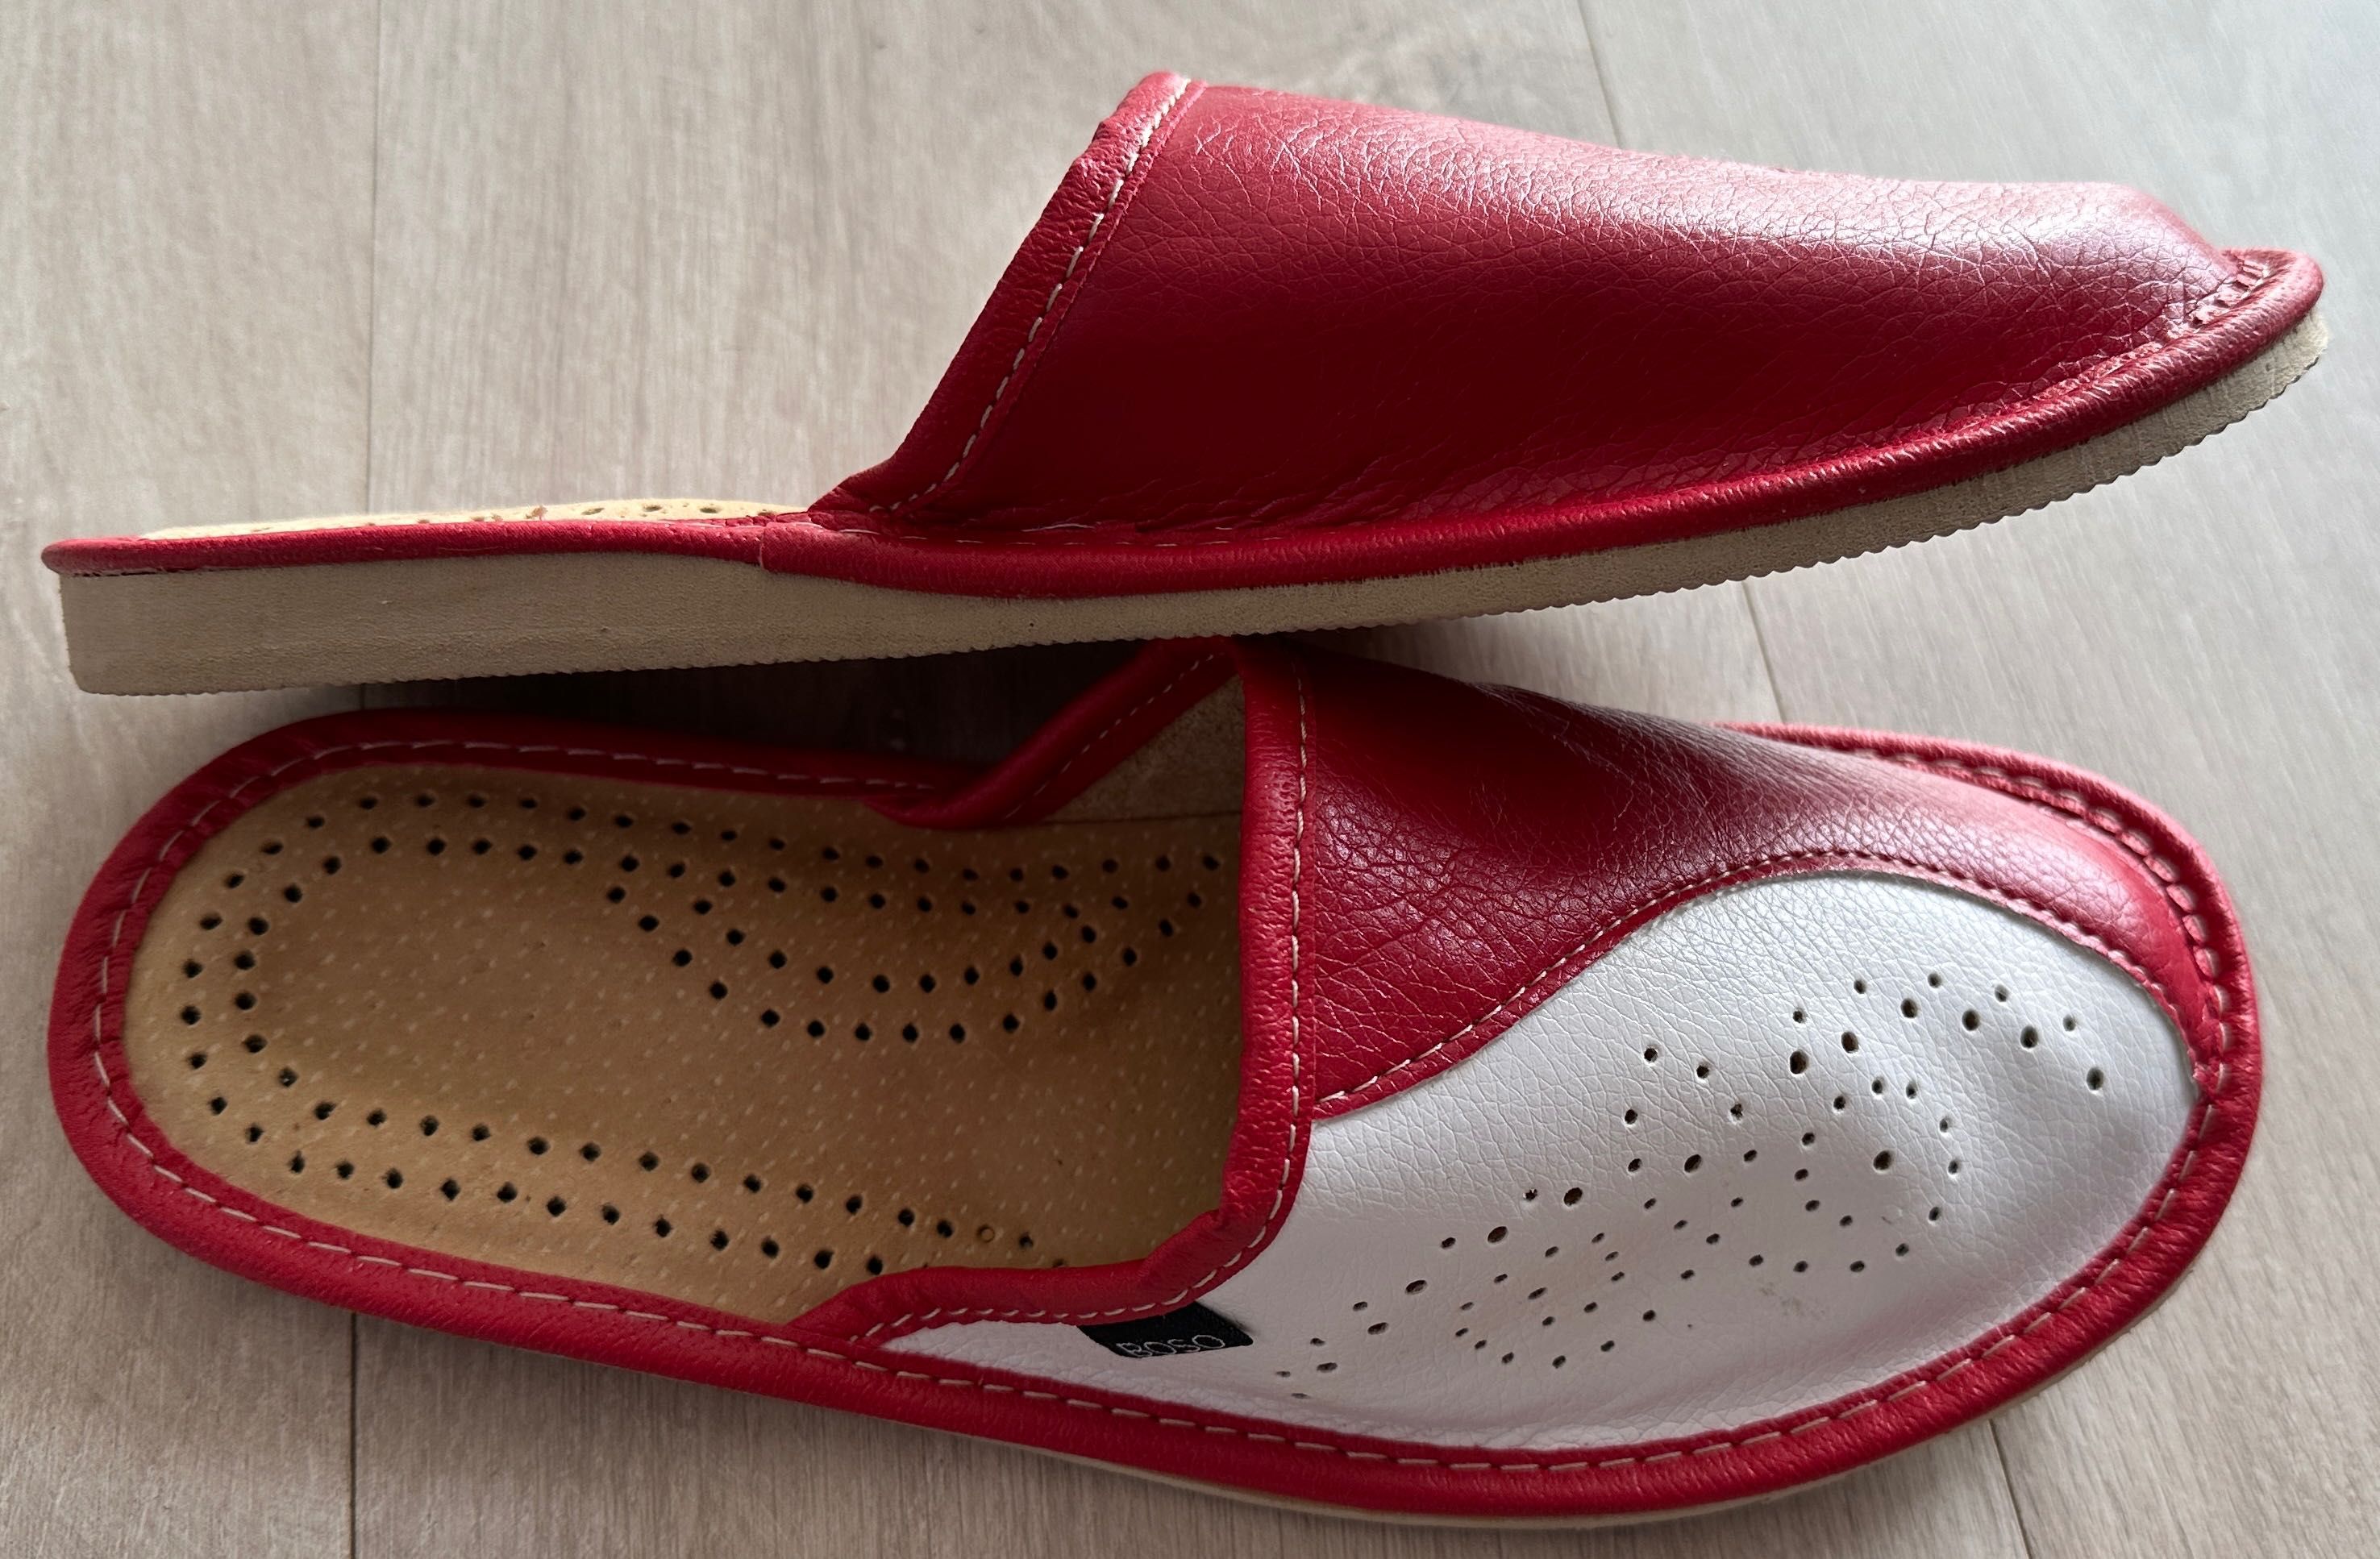 Pantofle skórzane damskie BOSO, rozmiar 36, podeszwa gumowa